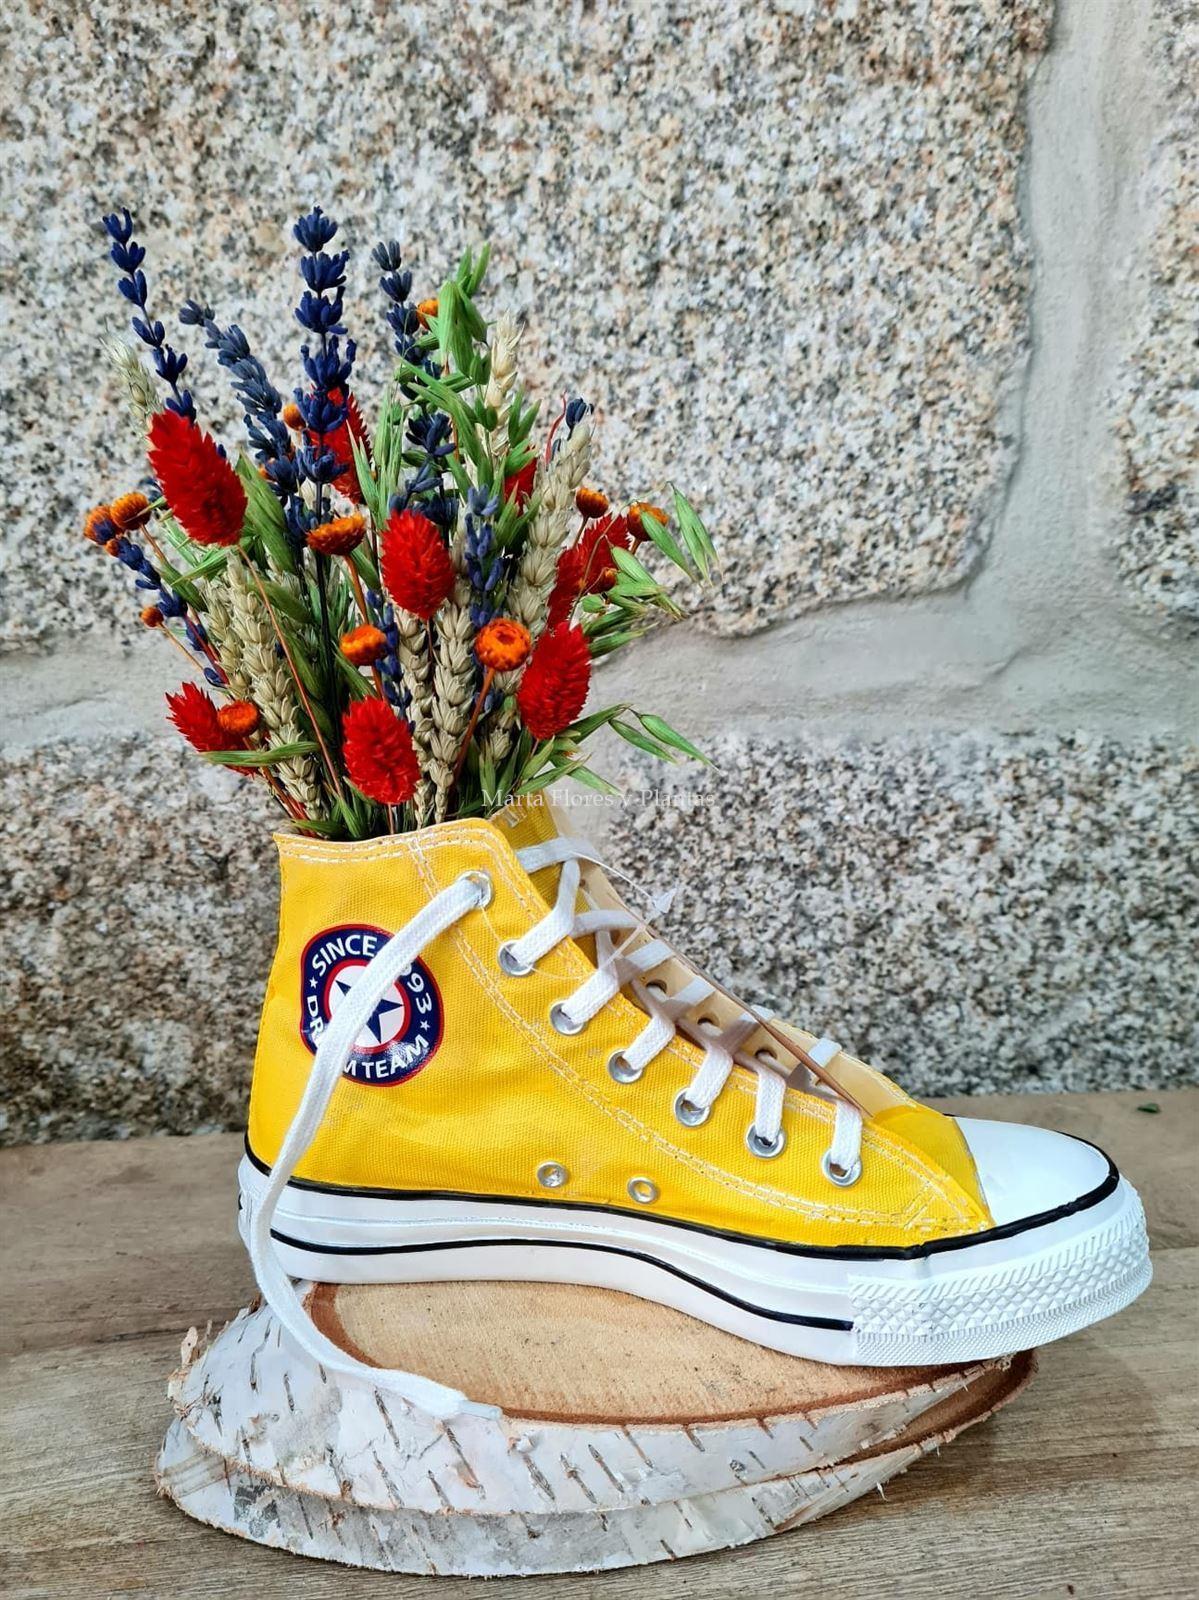 Zapatillas Convers con flor seca - Imagen 6